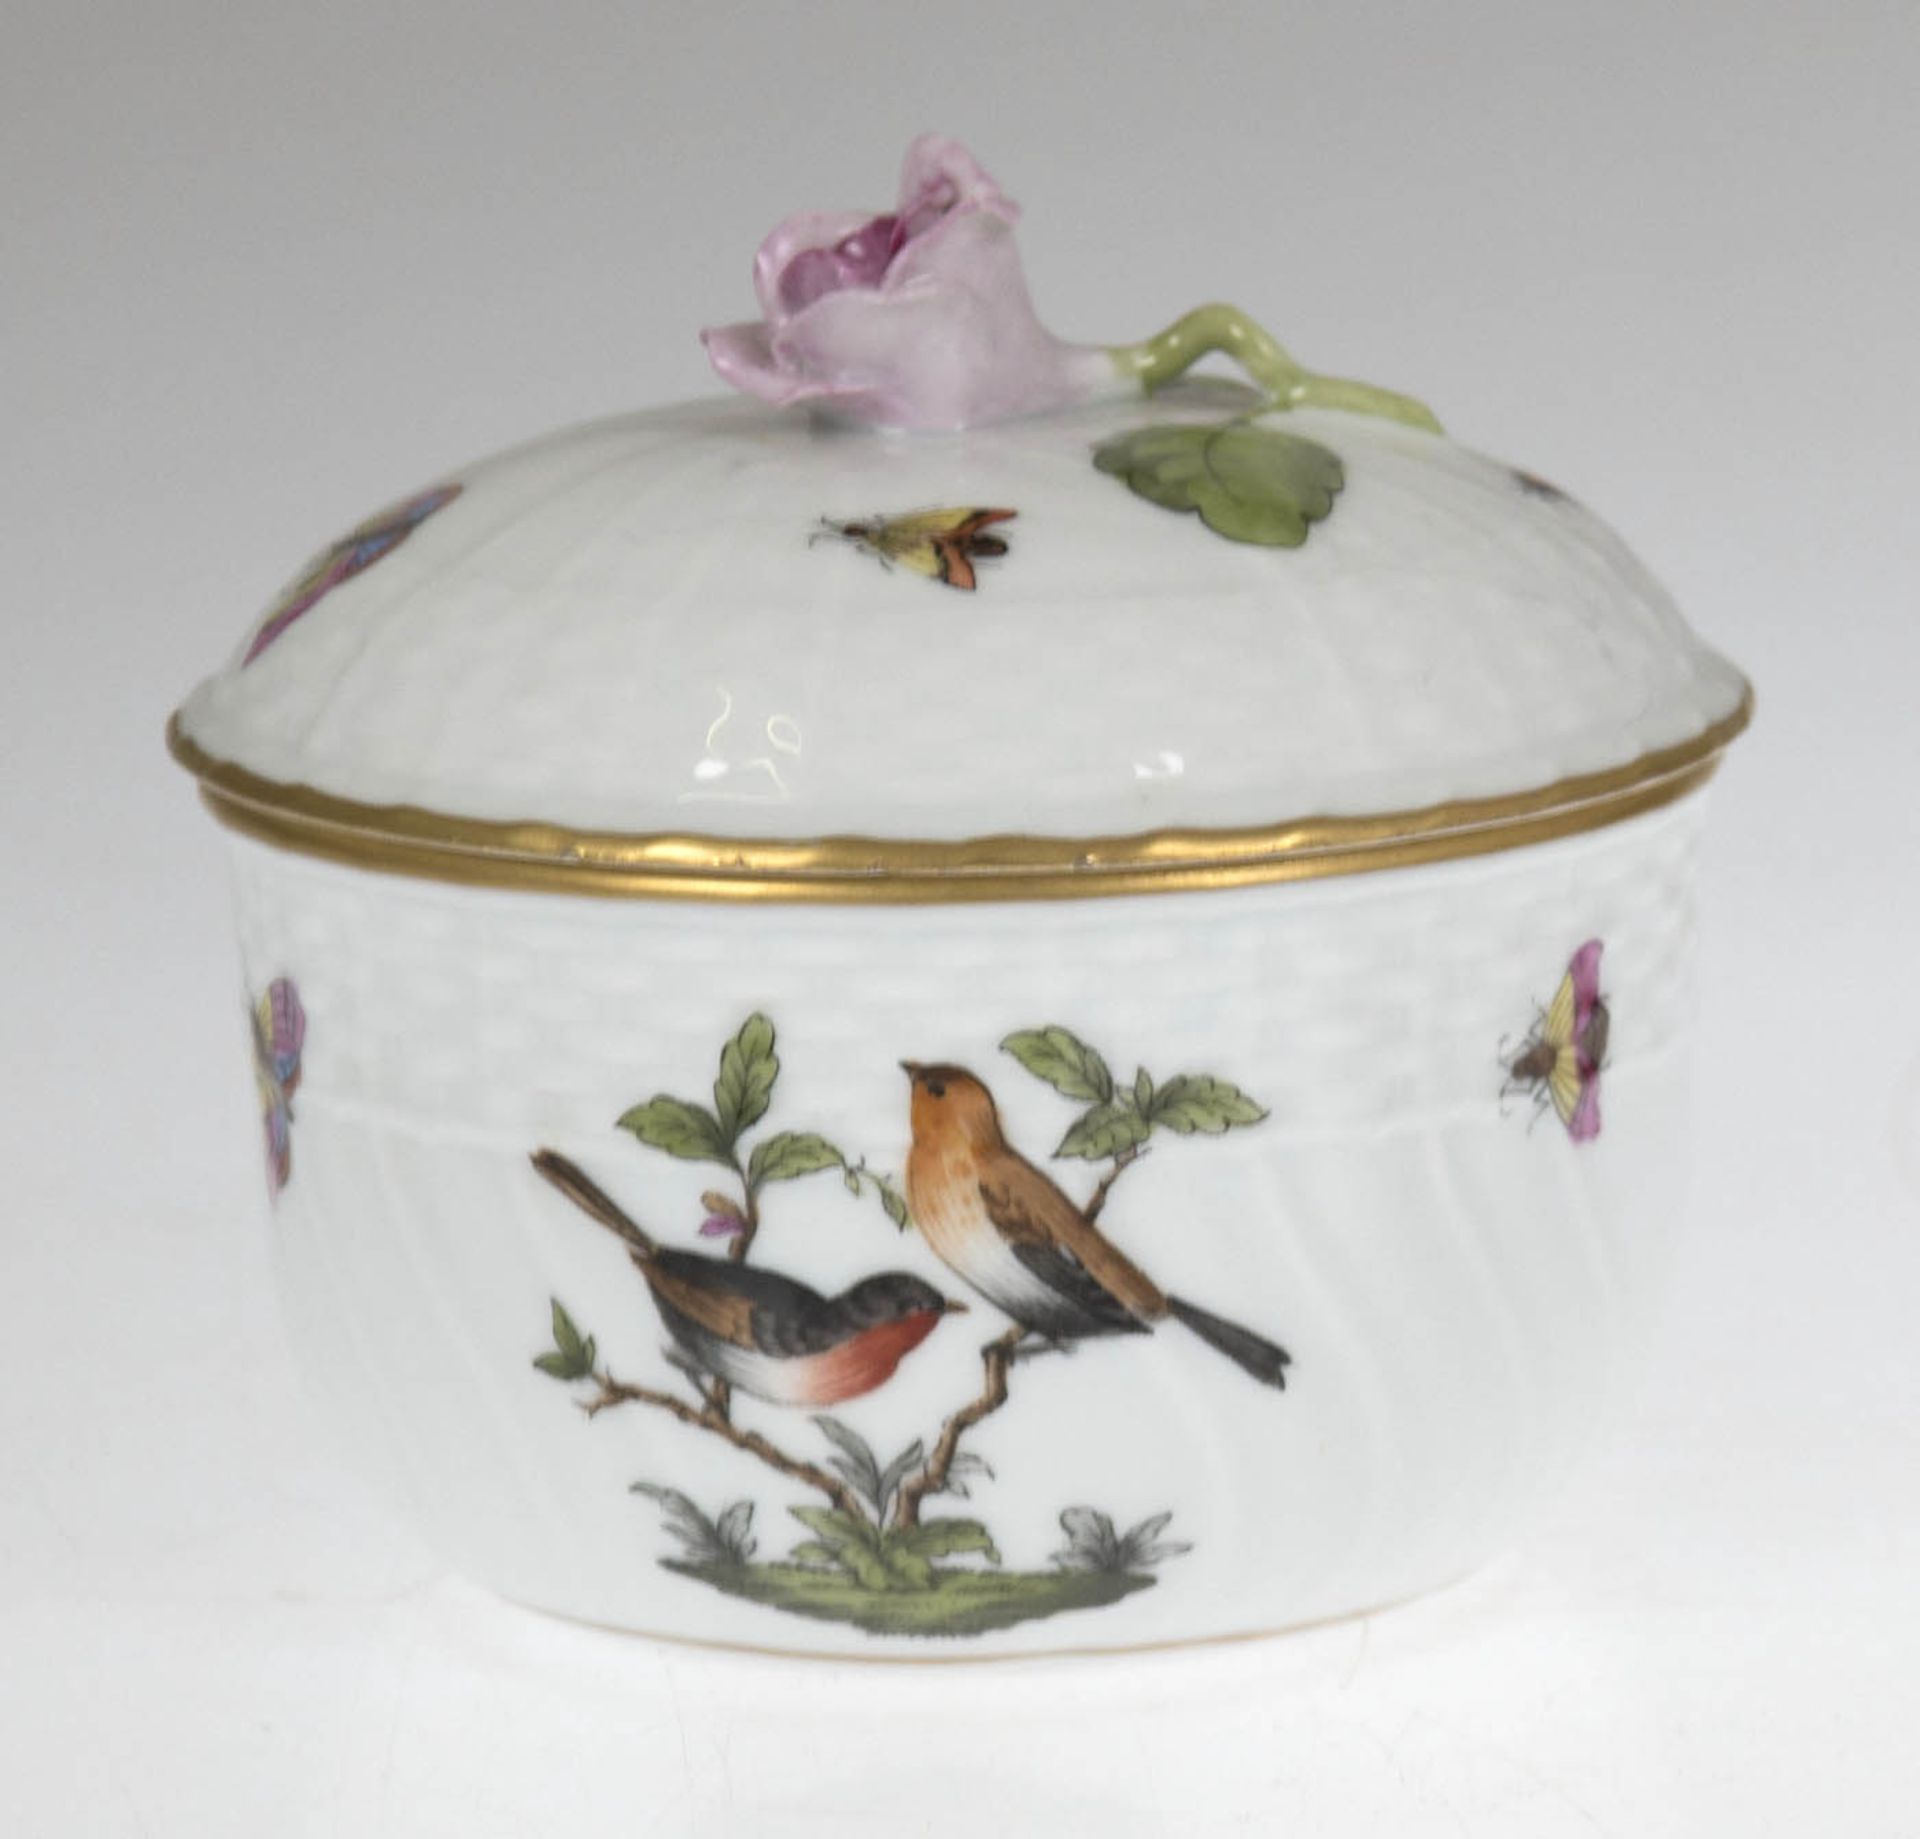 Konfektdose, Herend, Rothschild, polychrome Vogelmalerei mit Insekten, Rose alsDeckelbekrönung,